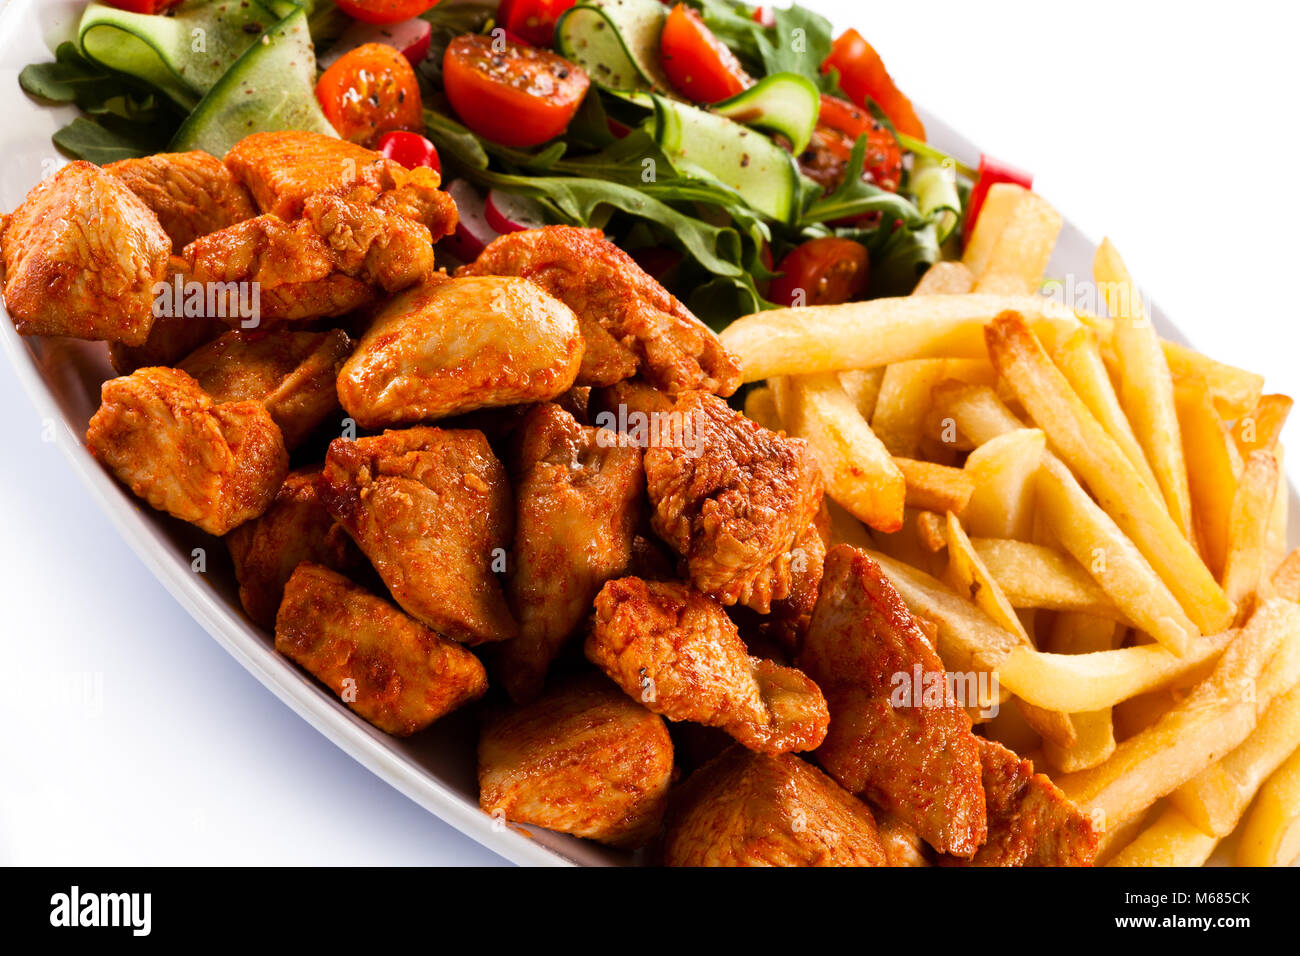 Fleisch vom Grill mit Pommes frites und Gemüse auf weißem Hintergrund  Stockfotografie - Alamy